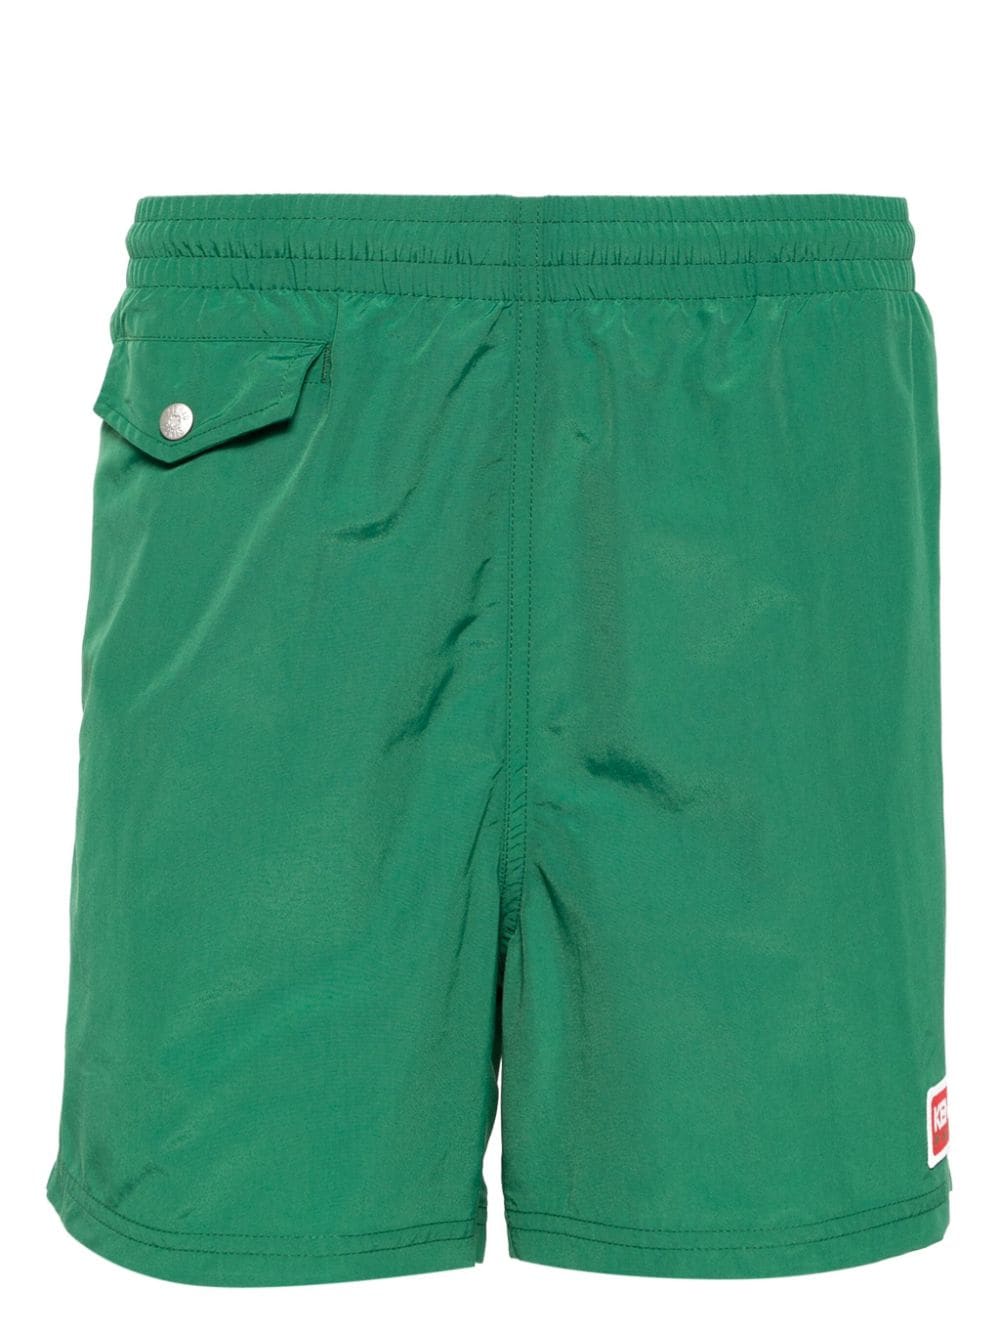 Pantaloncini da bagno verdi con toppa con logo<br><br><br>